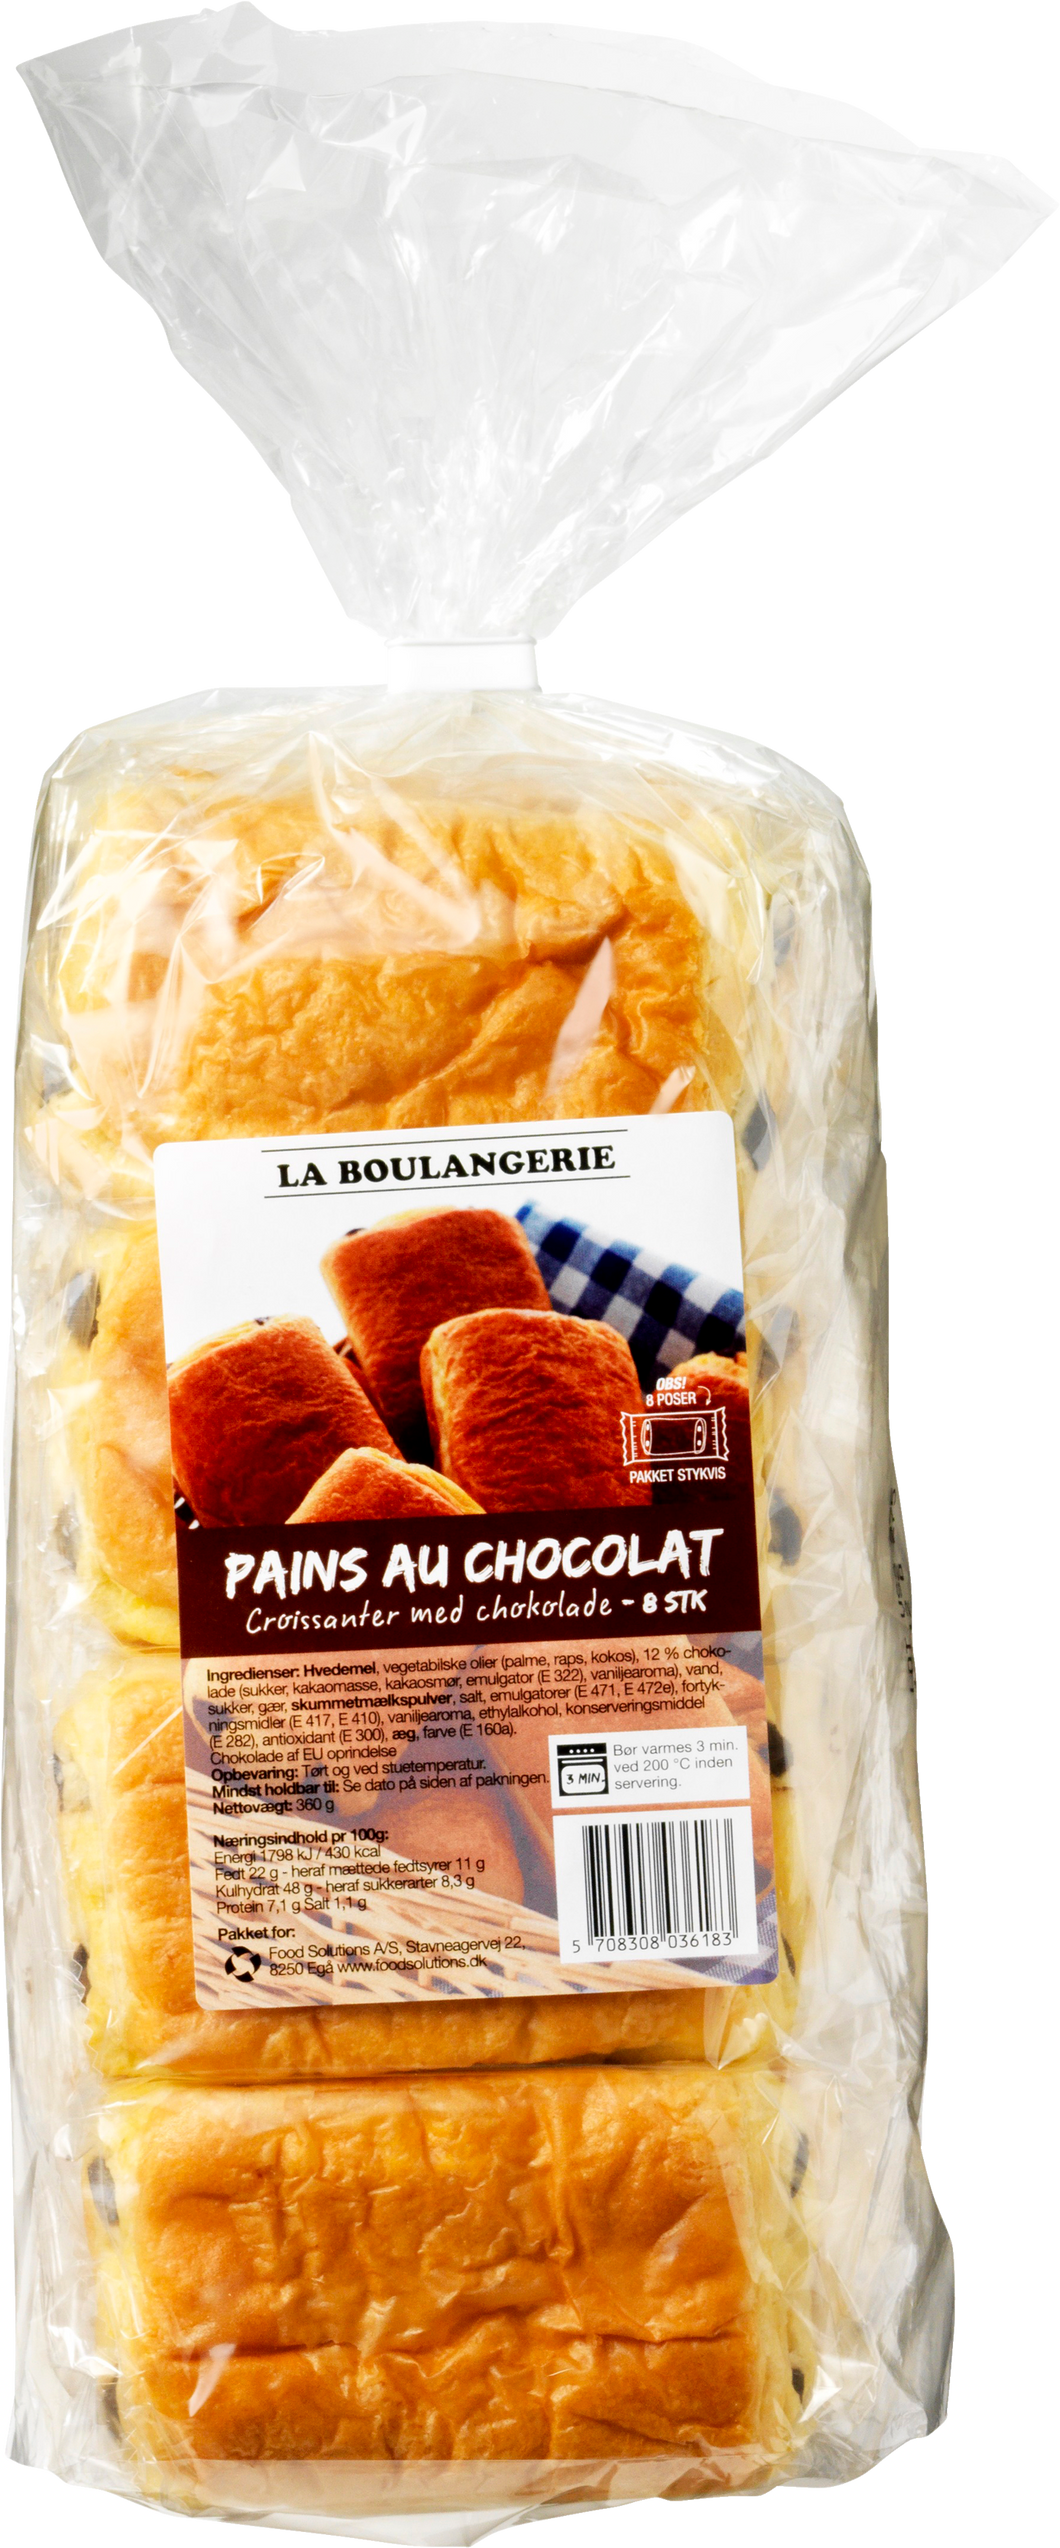 La Boulangerie - Pains au Chocolat (8 stk)